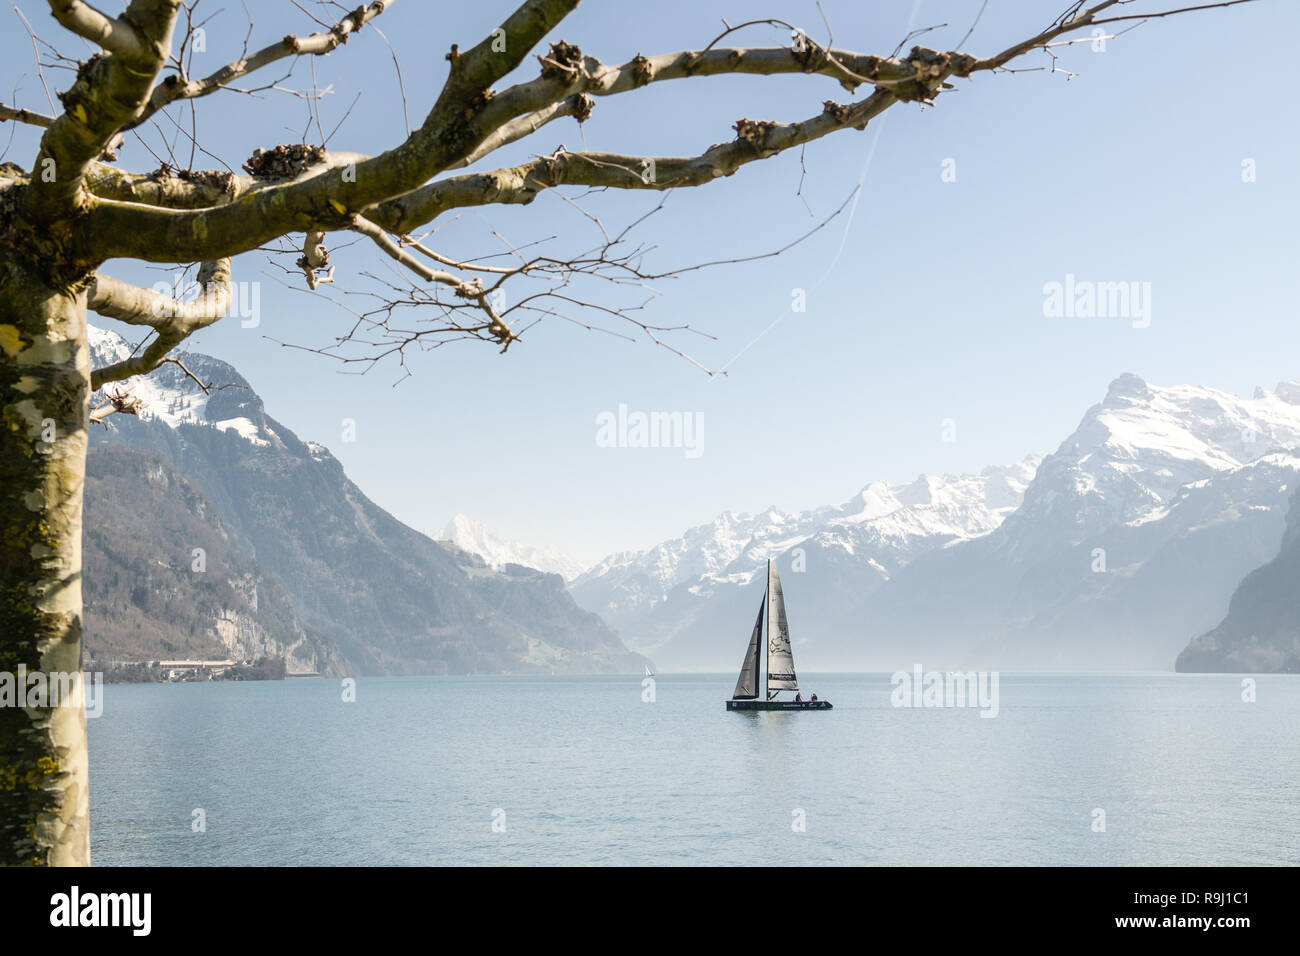 BRUNNEN, Svizzera - Aprile 7, 2018: la piccola barca a vela sul Lago di Lucerna vicino a Brunnen in Svizzera durante la bella giornata di primavera Foto Stock